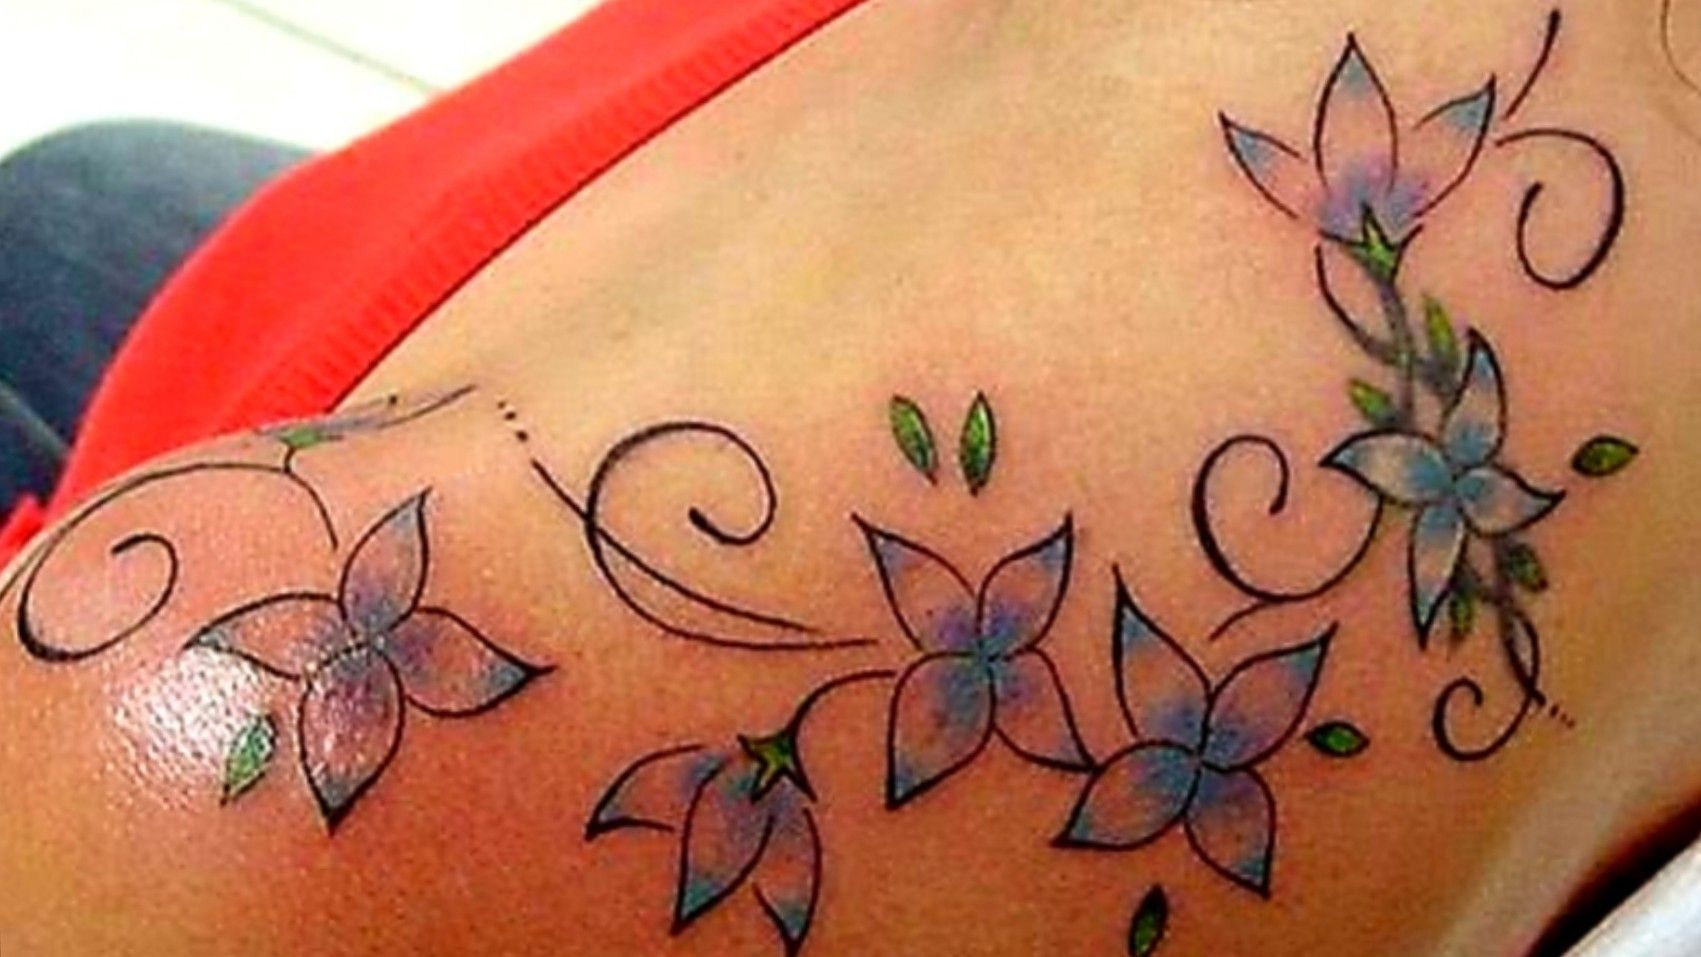 1. Rose Vine Tattoo Designs - wide 3